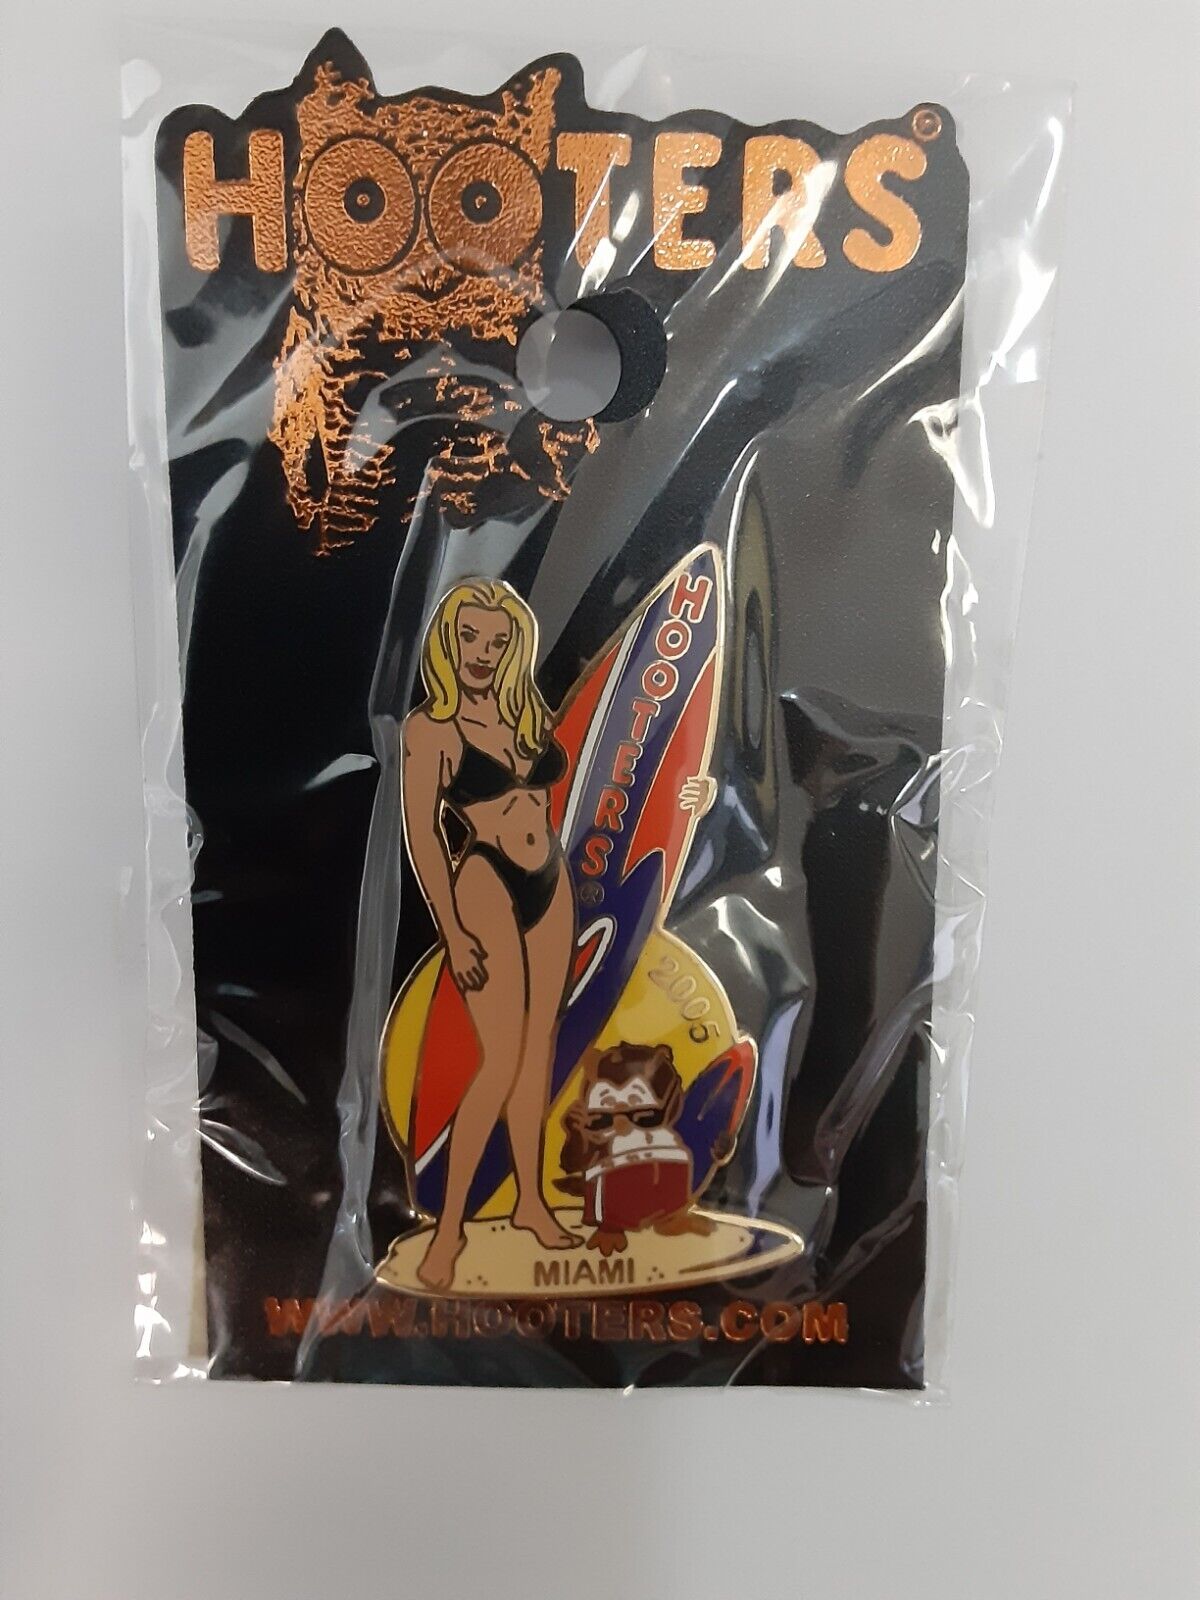 Hooters 2005 Miami Pin Surf Board Owl Bikini Girl